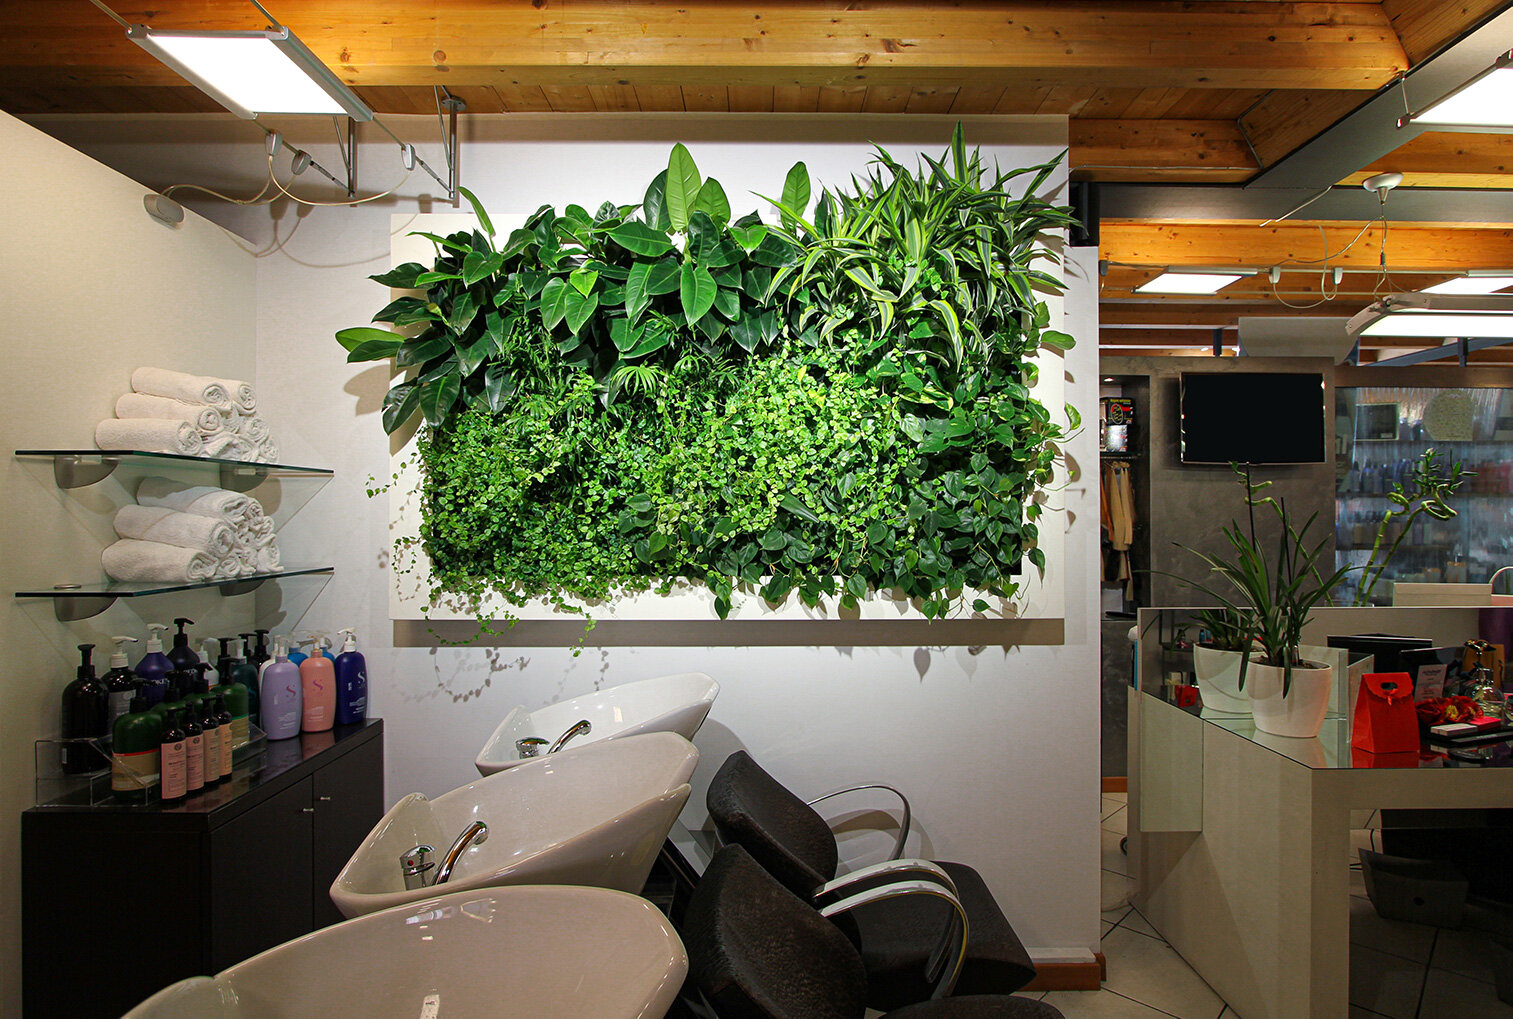 target-moda-garden-vertical-wall-green-sundar-italia-001 copia.jpg